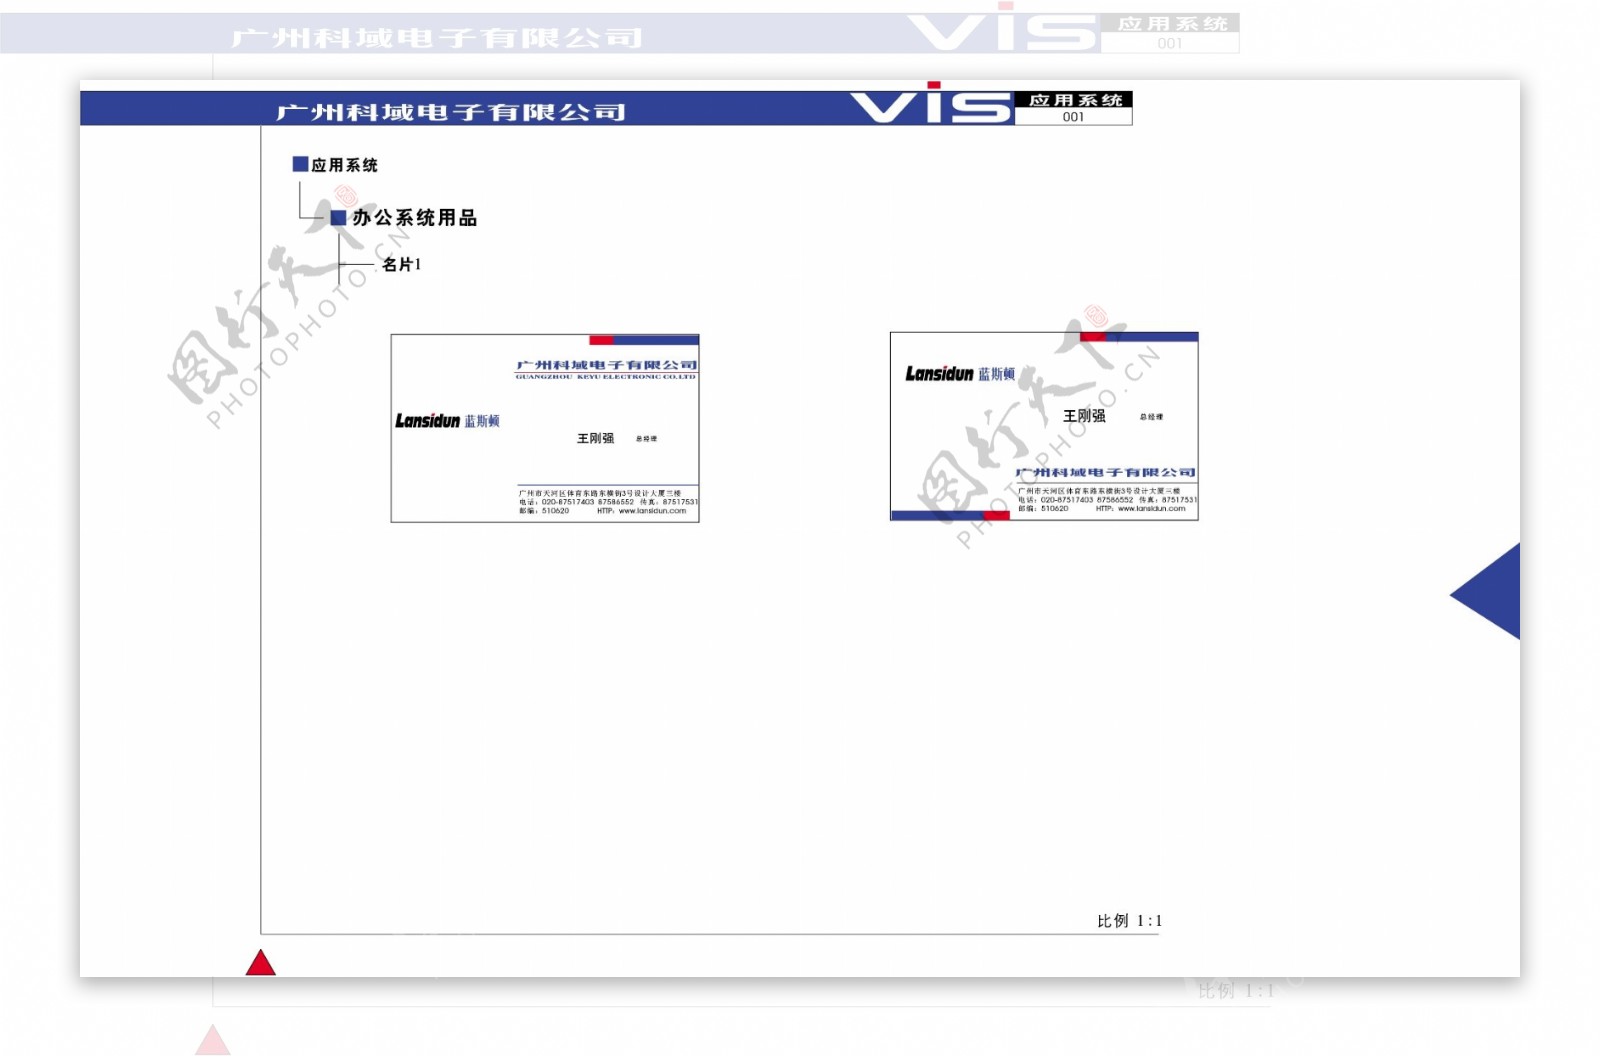 广州科域电子VI矢量CDR文件VI设计VI宝典